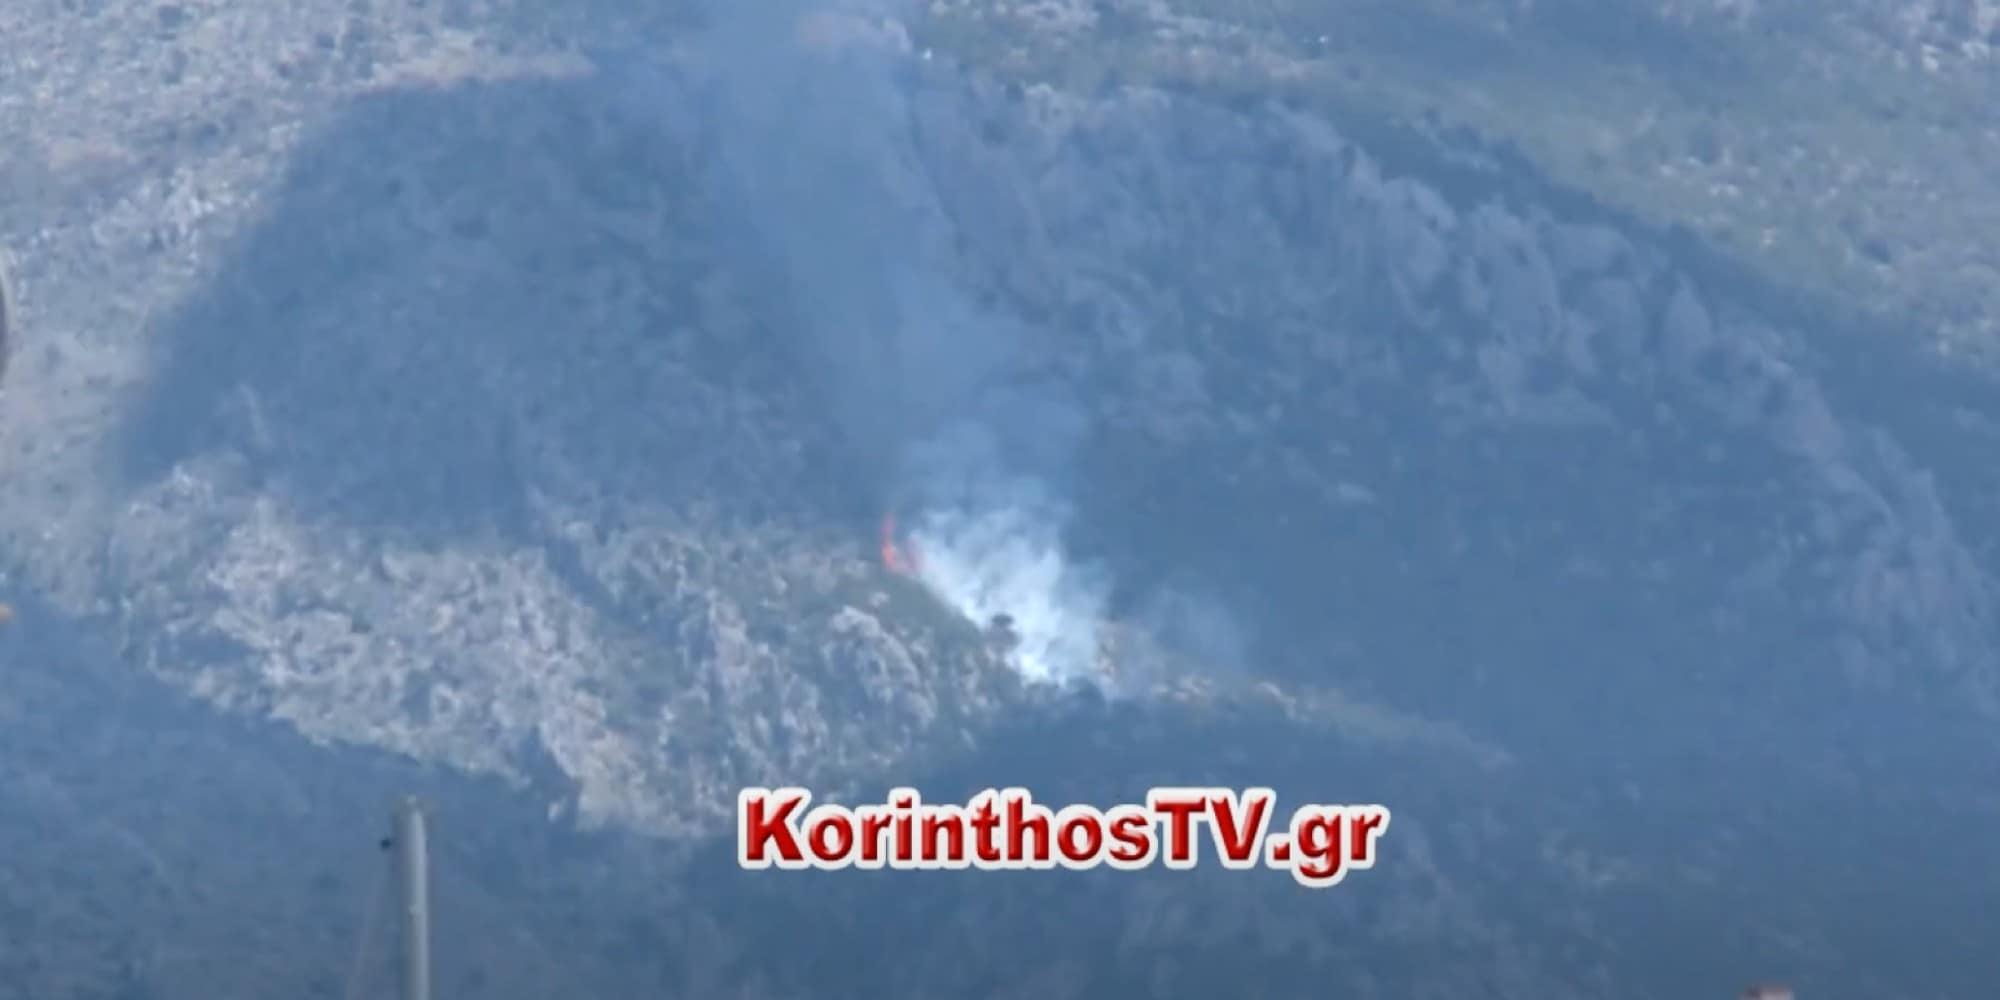 Μεγάλη πυρκαγιά στα Γεράνεια Όρη πάνω από το Λουτράκι